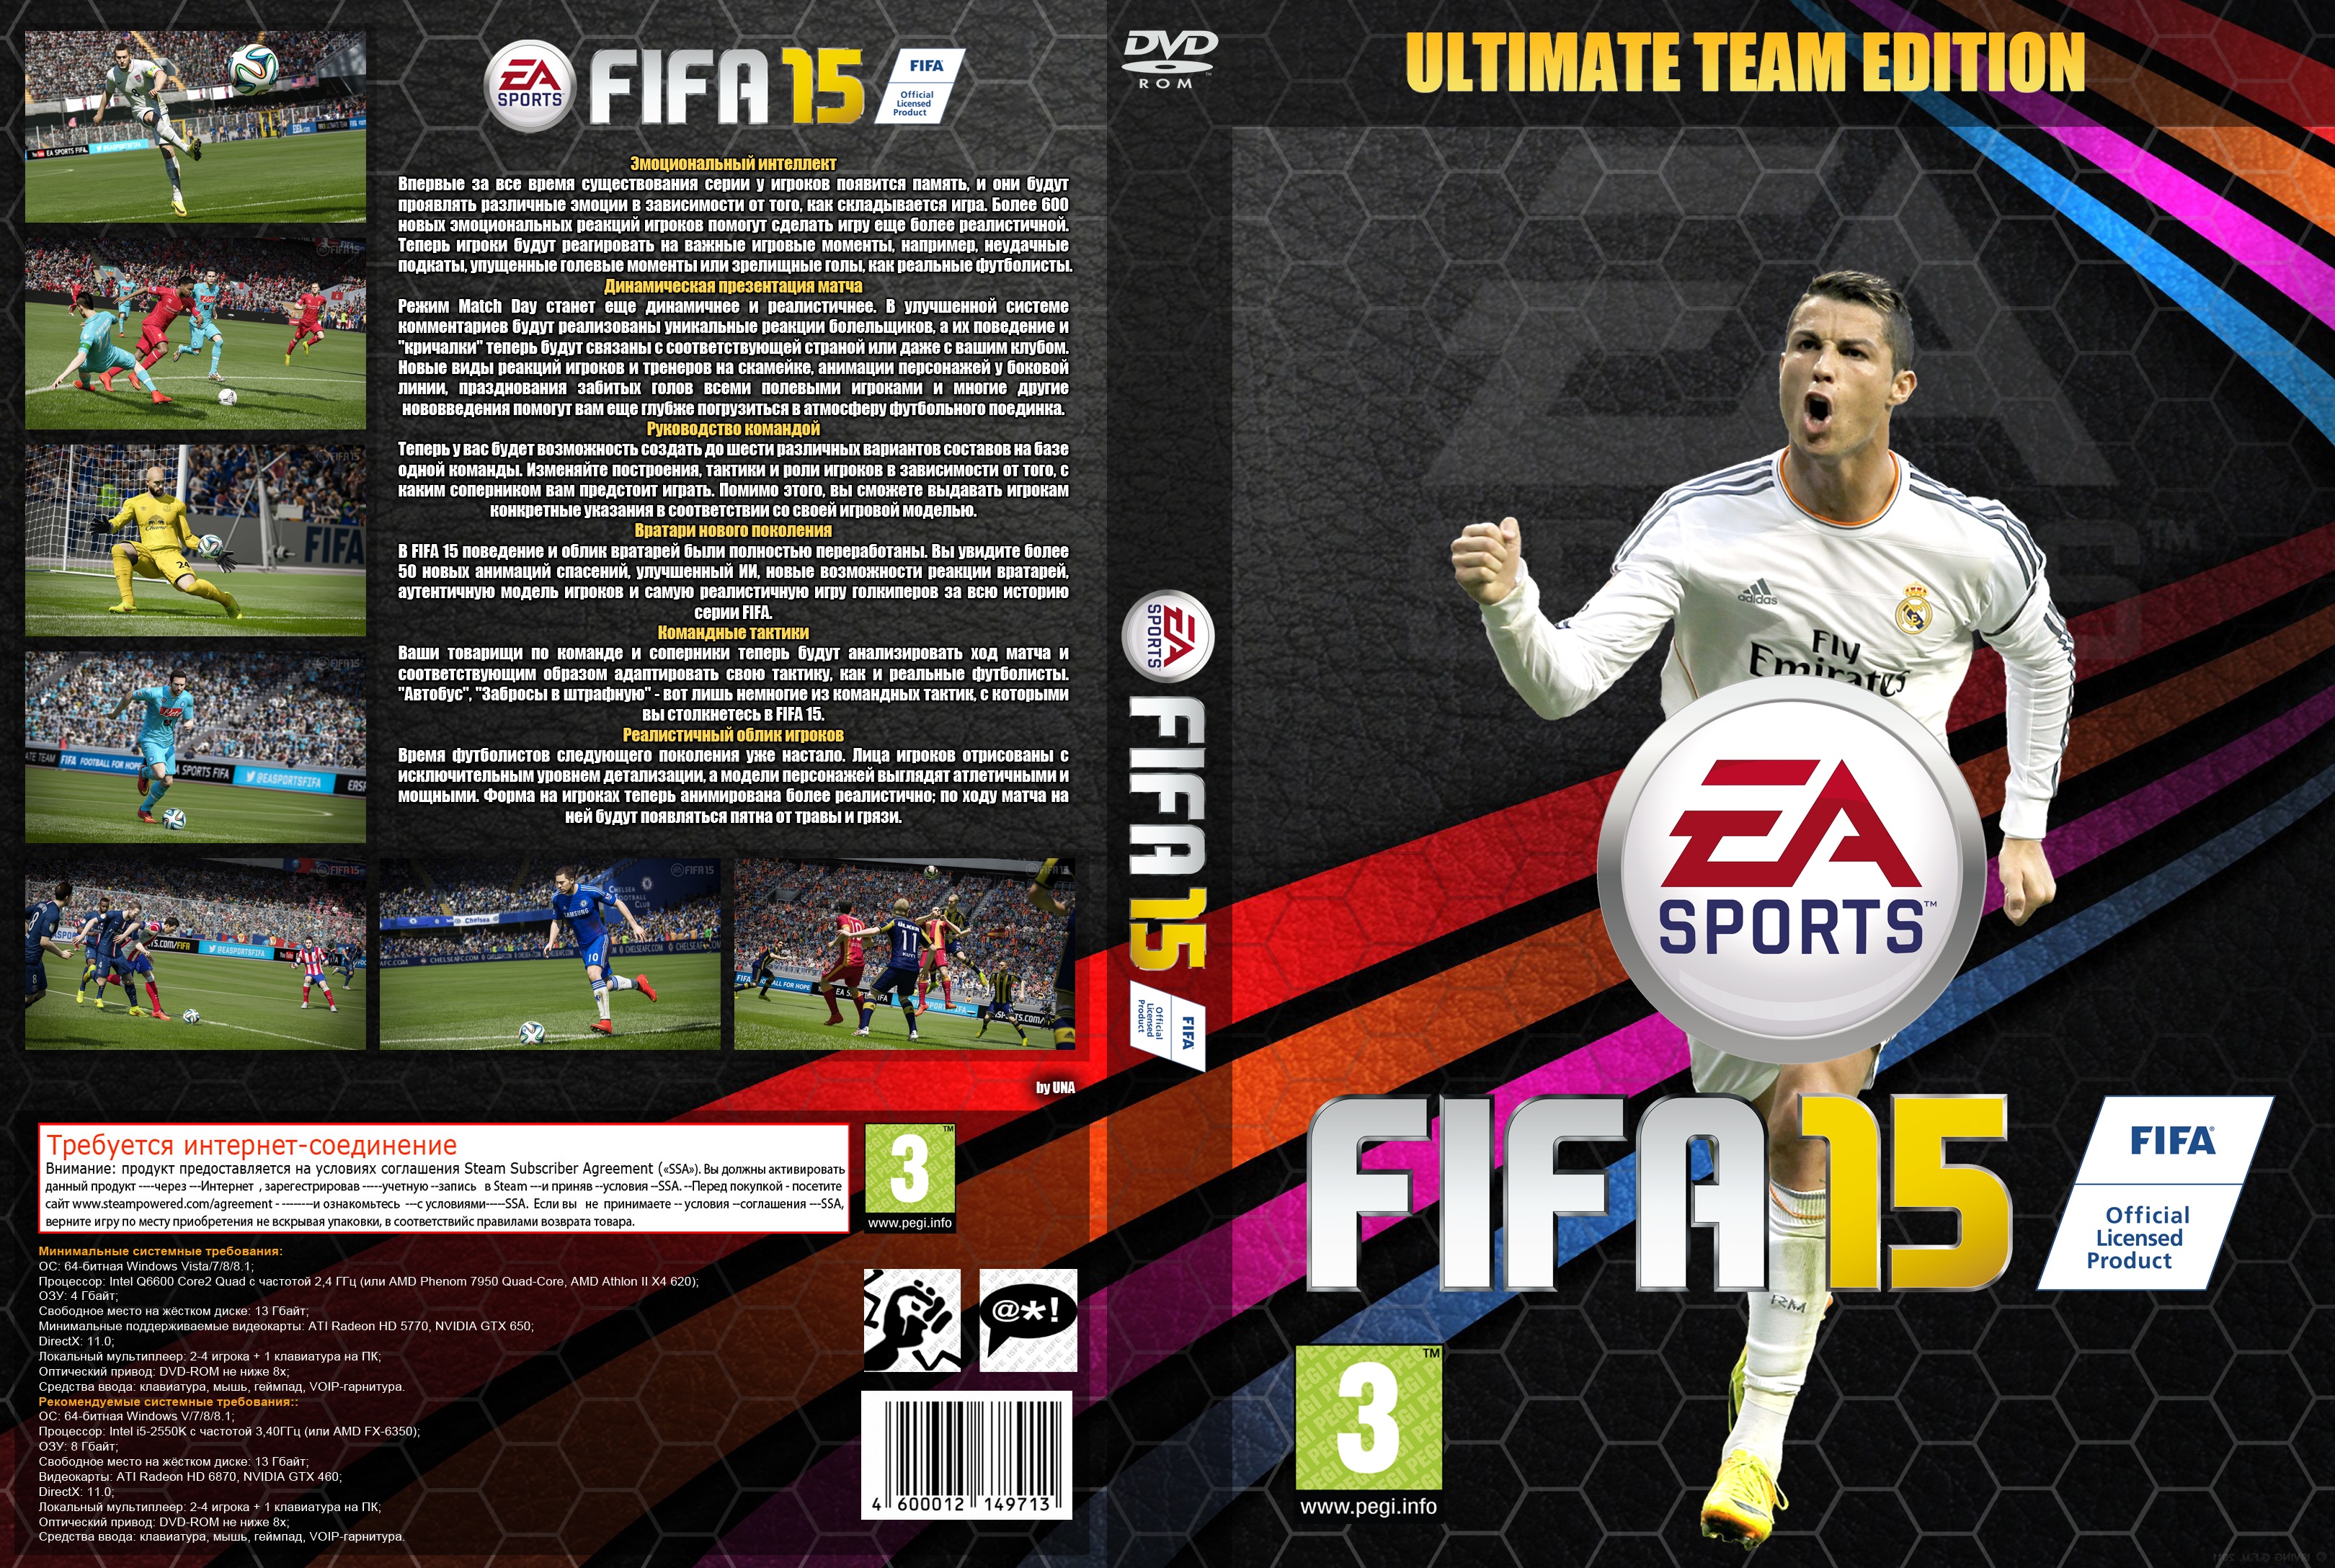 Игру узнай игрока. ФИФА 2015 ультимейт тим. FIFA 15 ps3 обложка. FIFA 15: Ultimate Team Edition. ФИФА 15 на пс2.